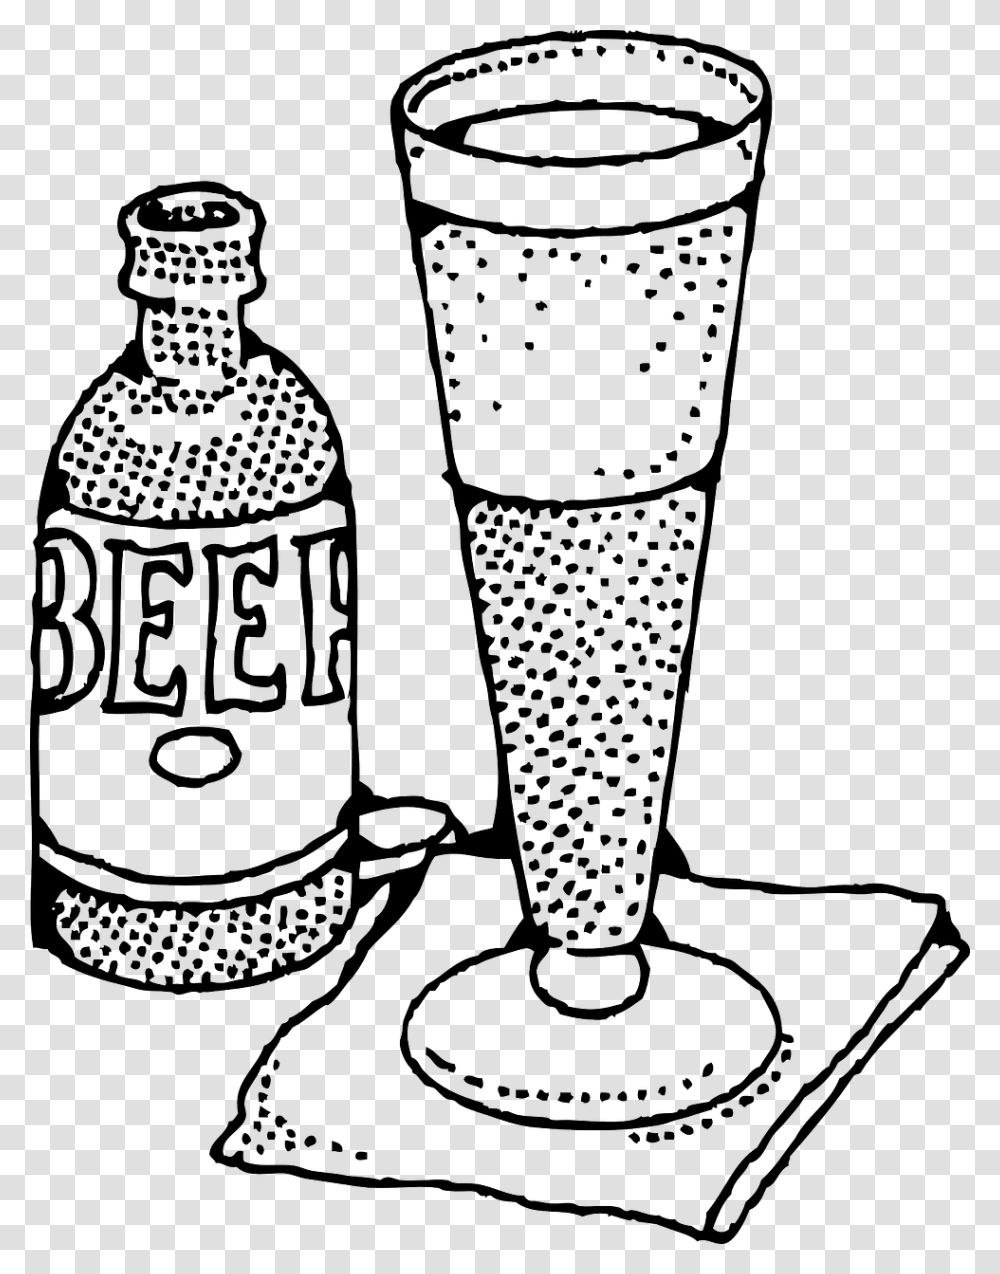 Clipart Black And White Beer Mug, Glass, Goblet, Alcohol, Beverage Transparent Png